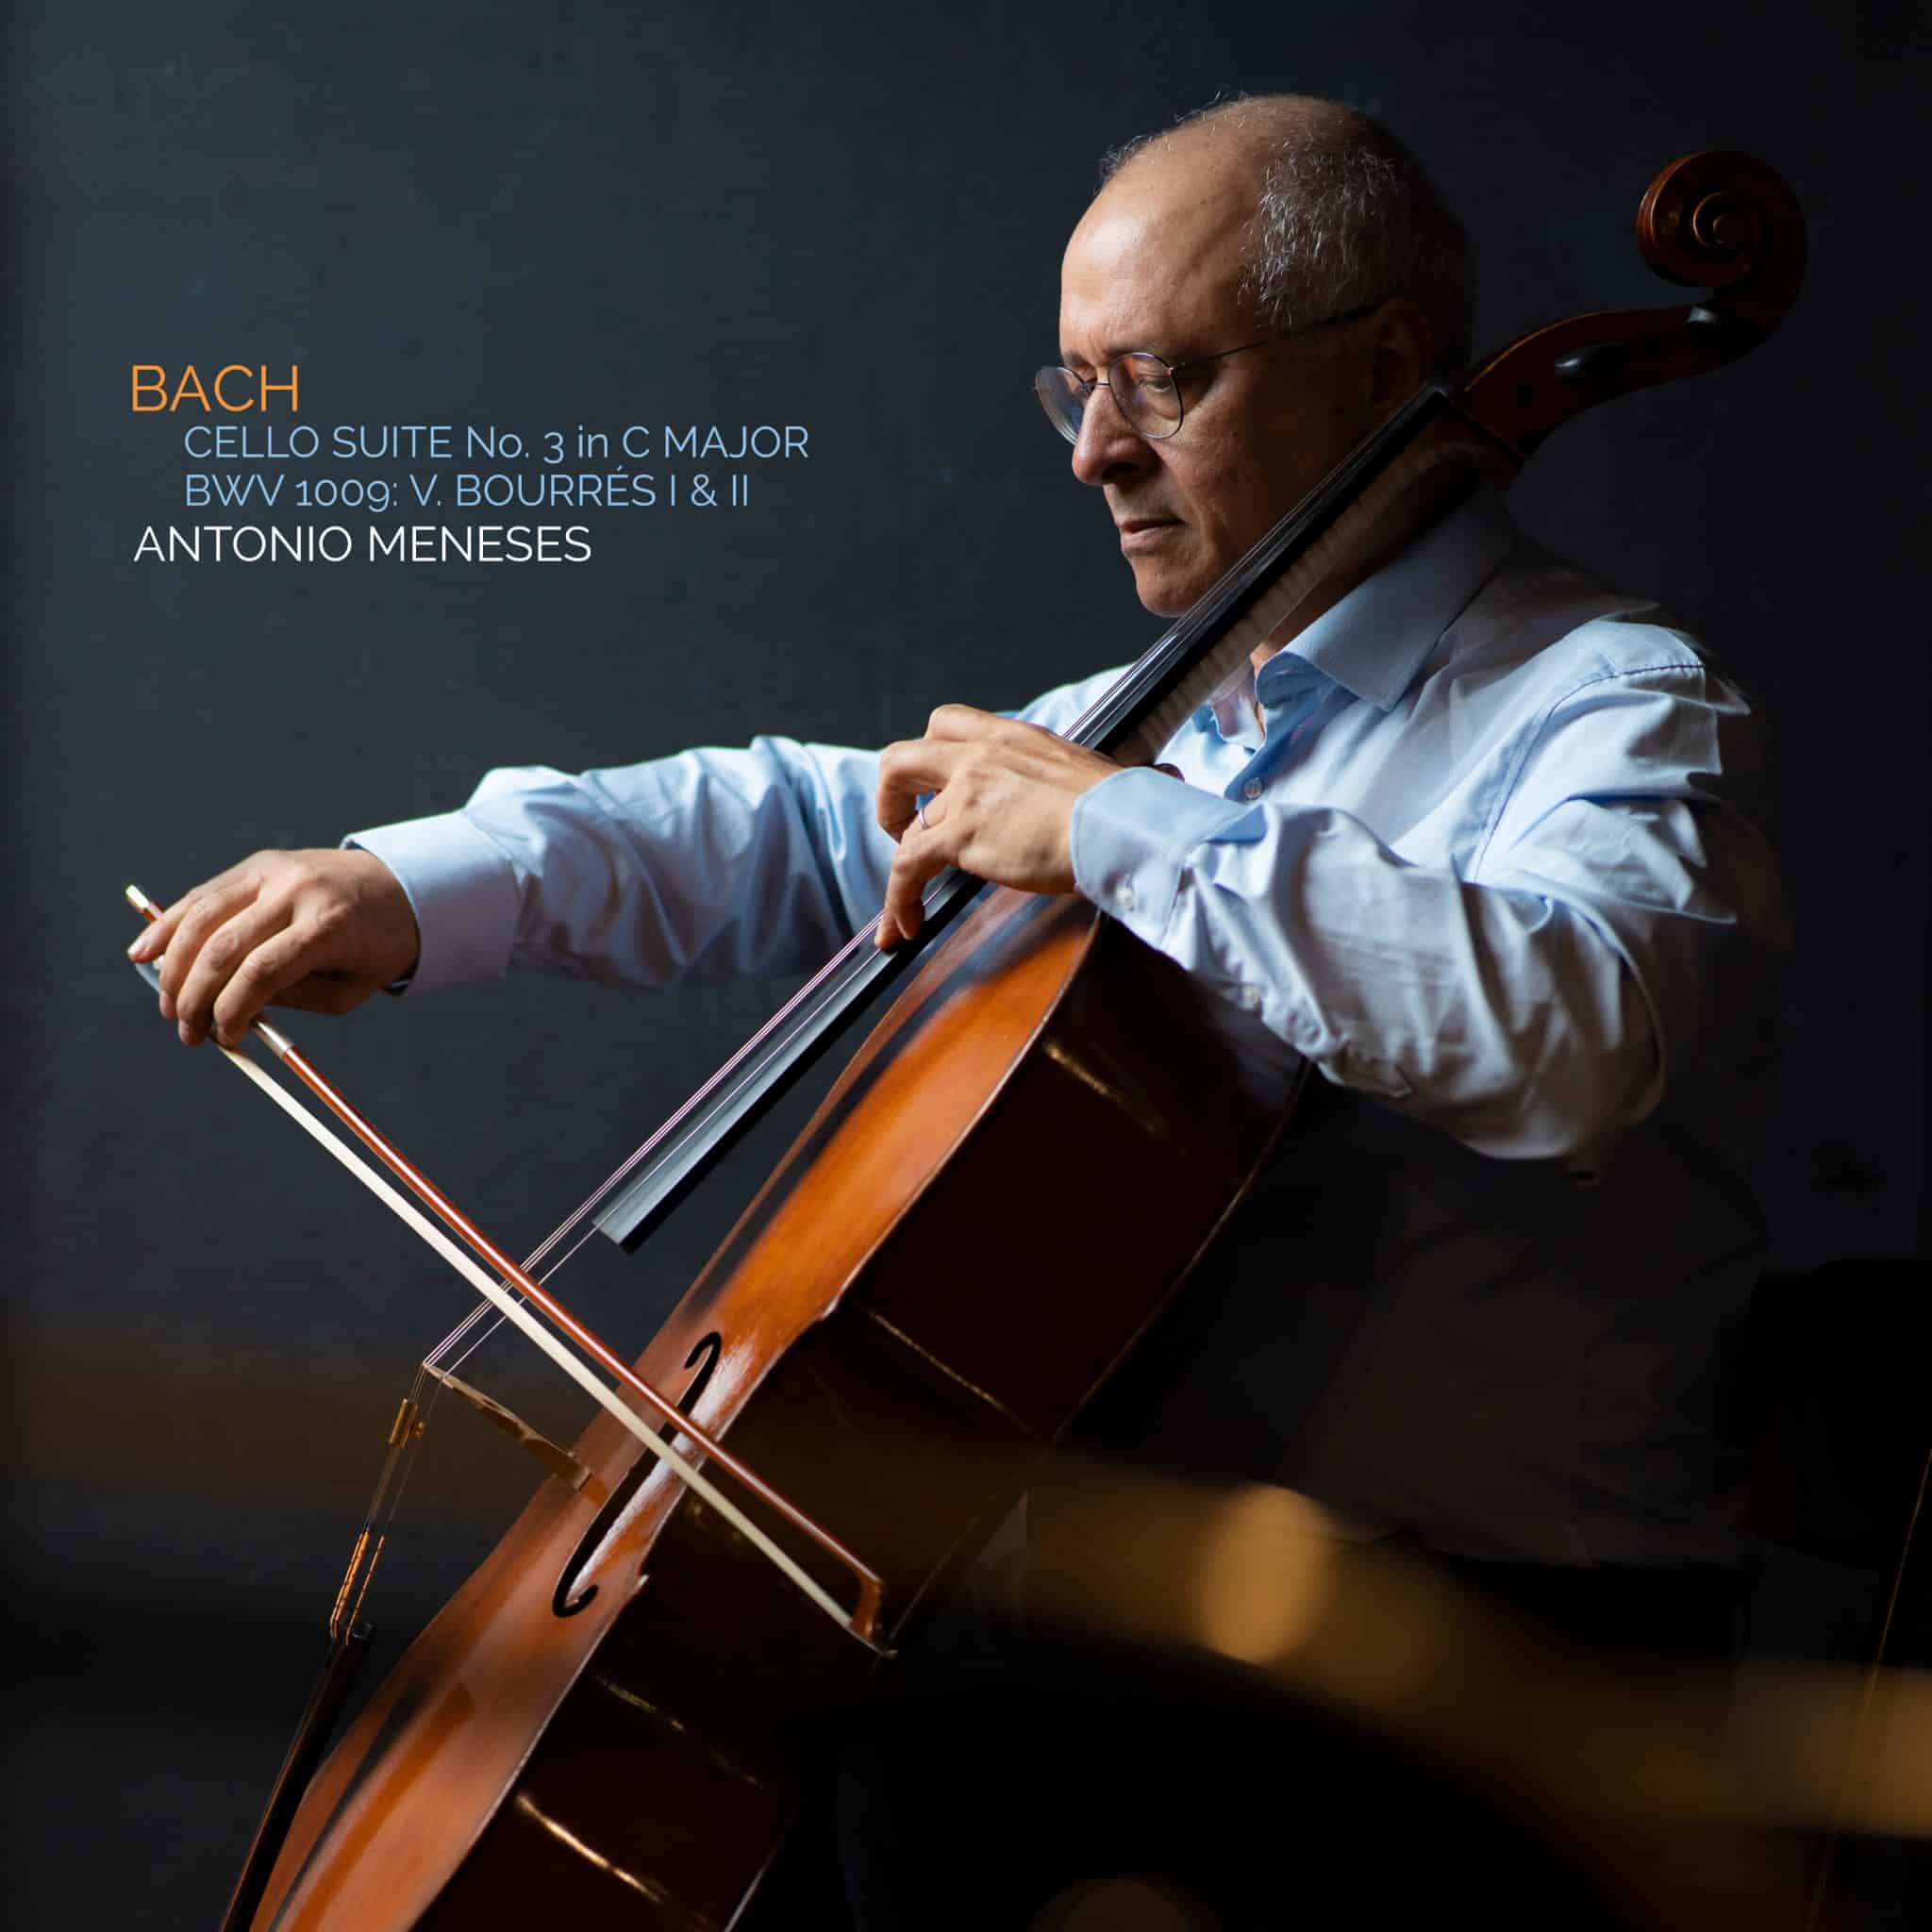 revistaprosaversoearte.com - Antonio Meneses lança o segundo single do seu novo álbum 'Bach: The Cello Suites'